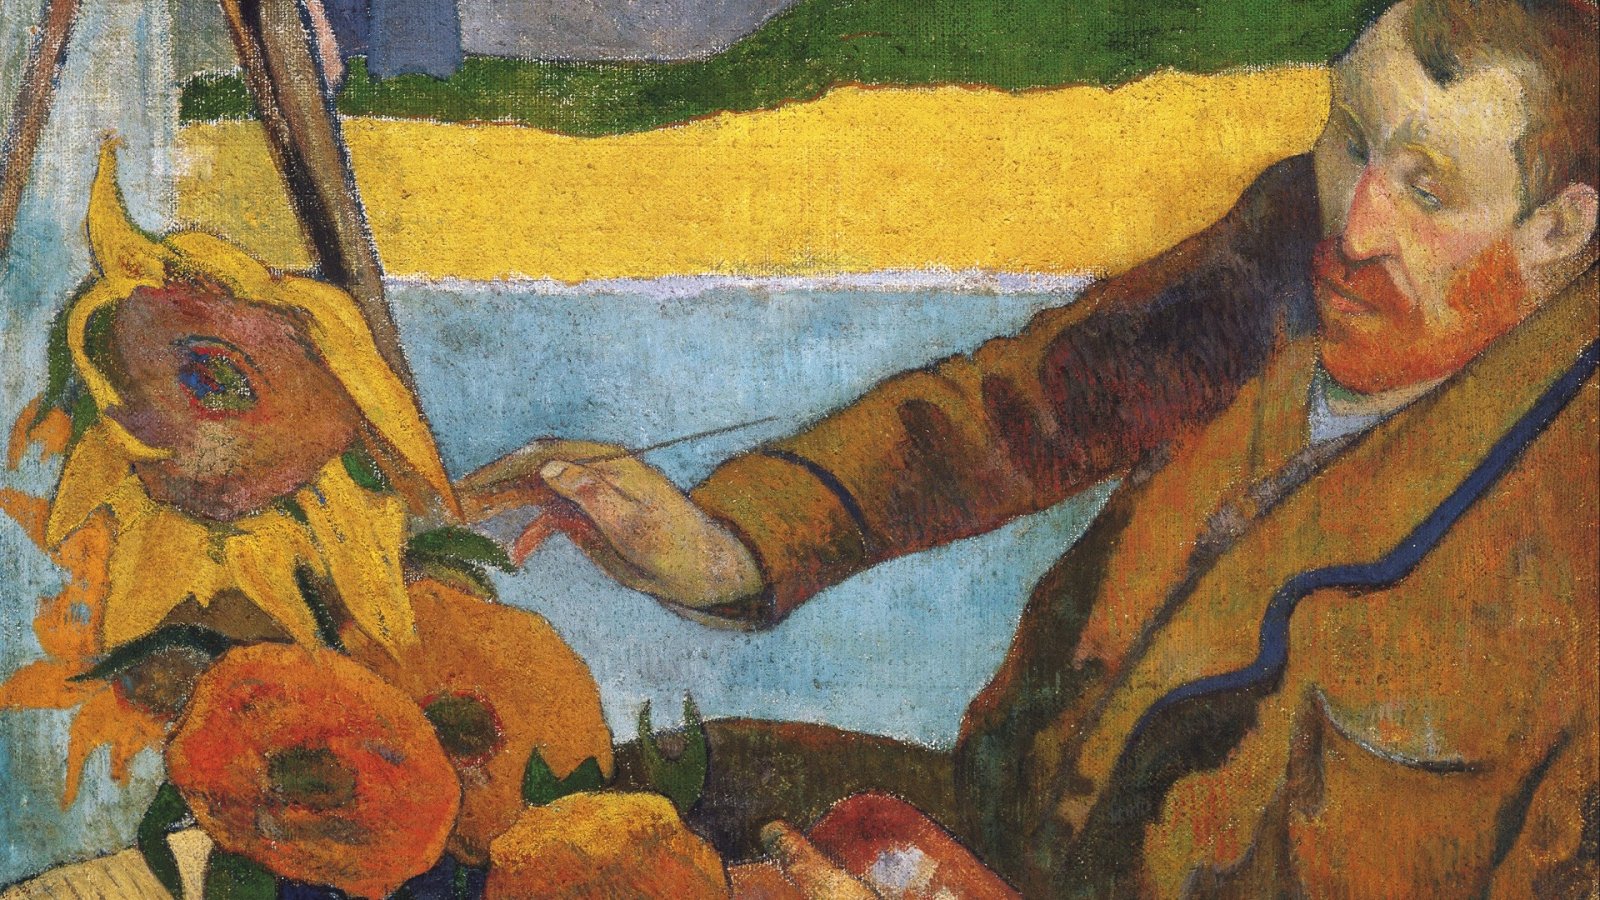 Roszczenie prawne dotyczy własności obrazu Van Gogha Słoneczniki